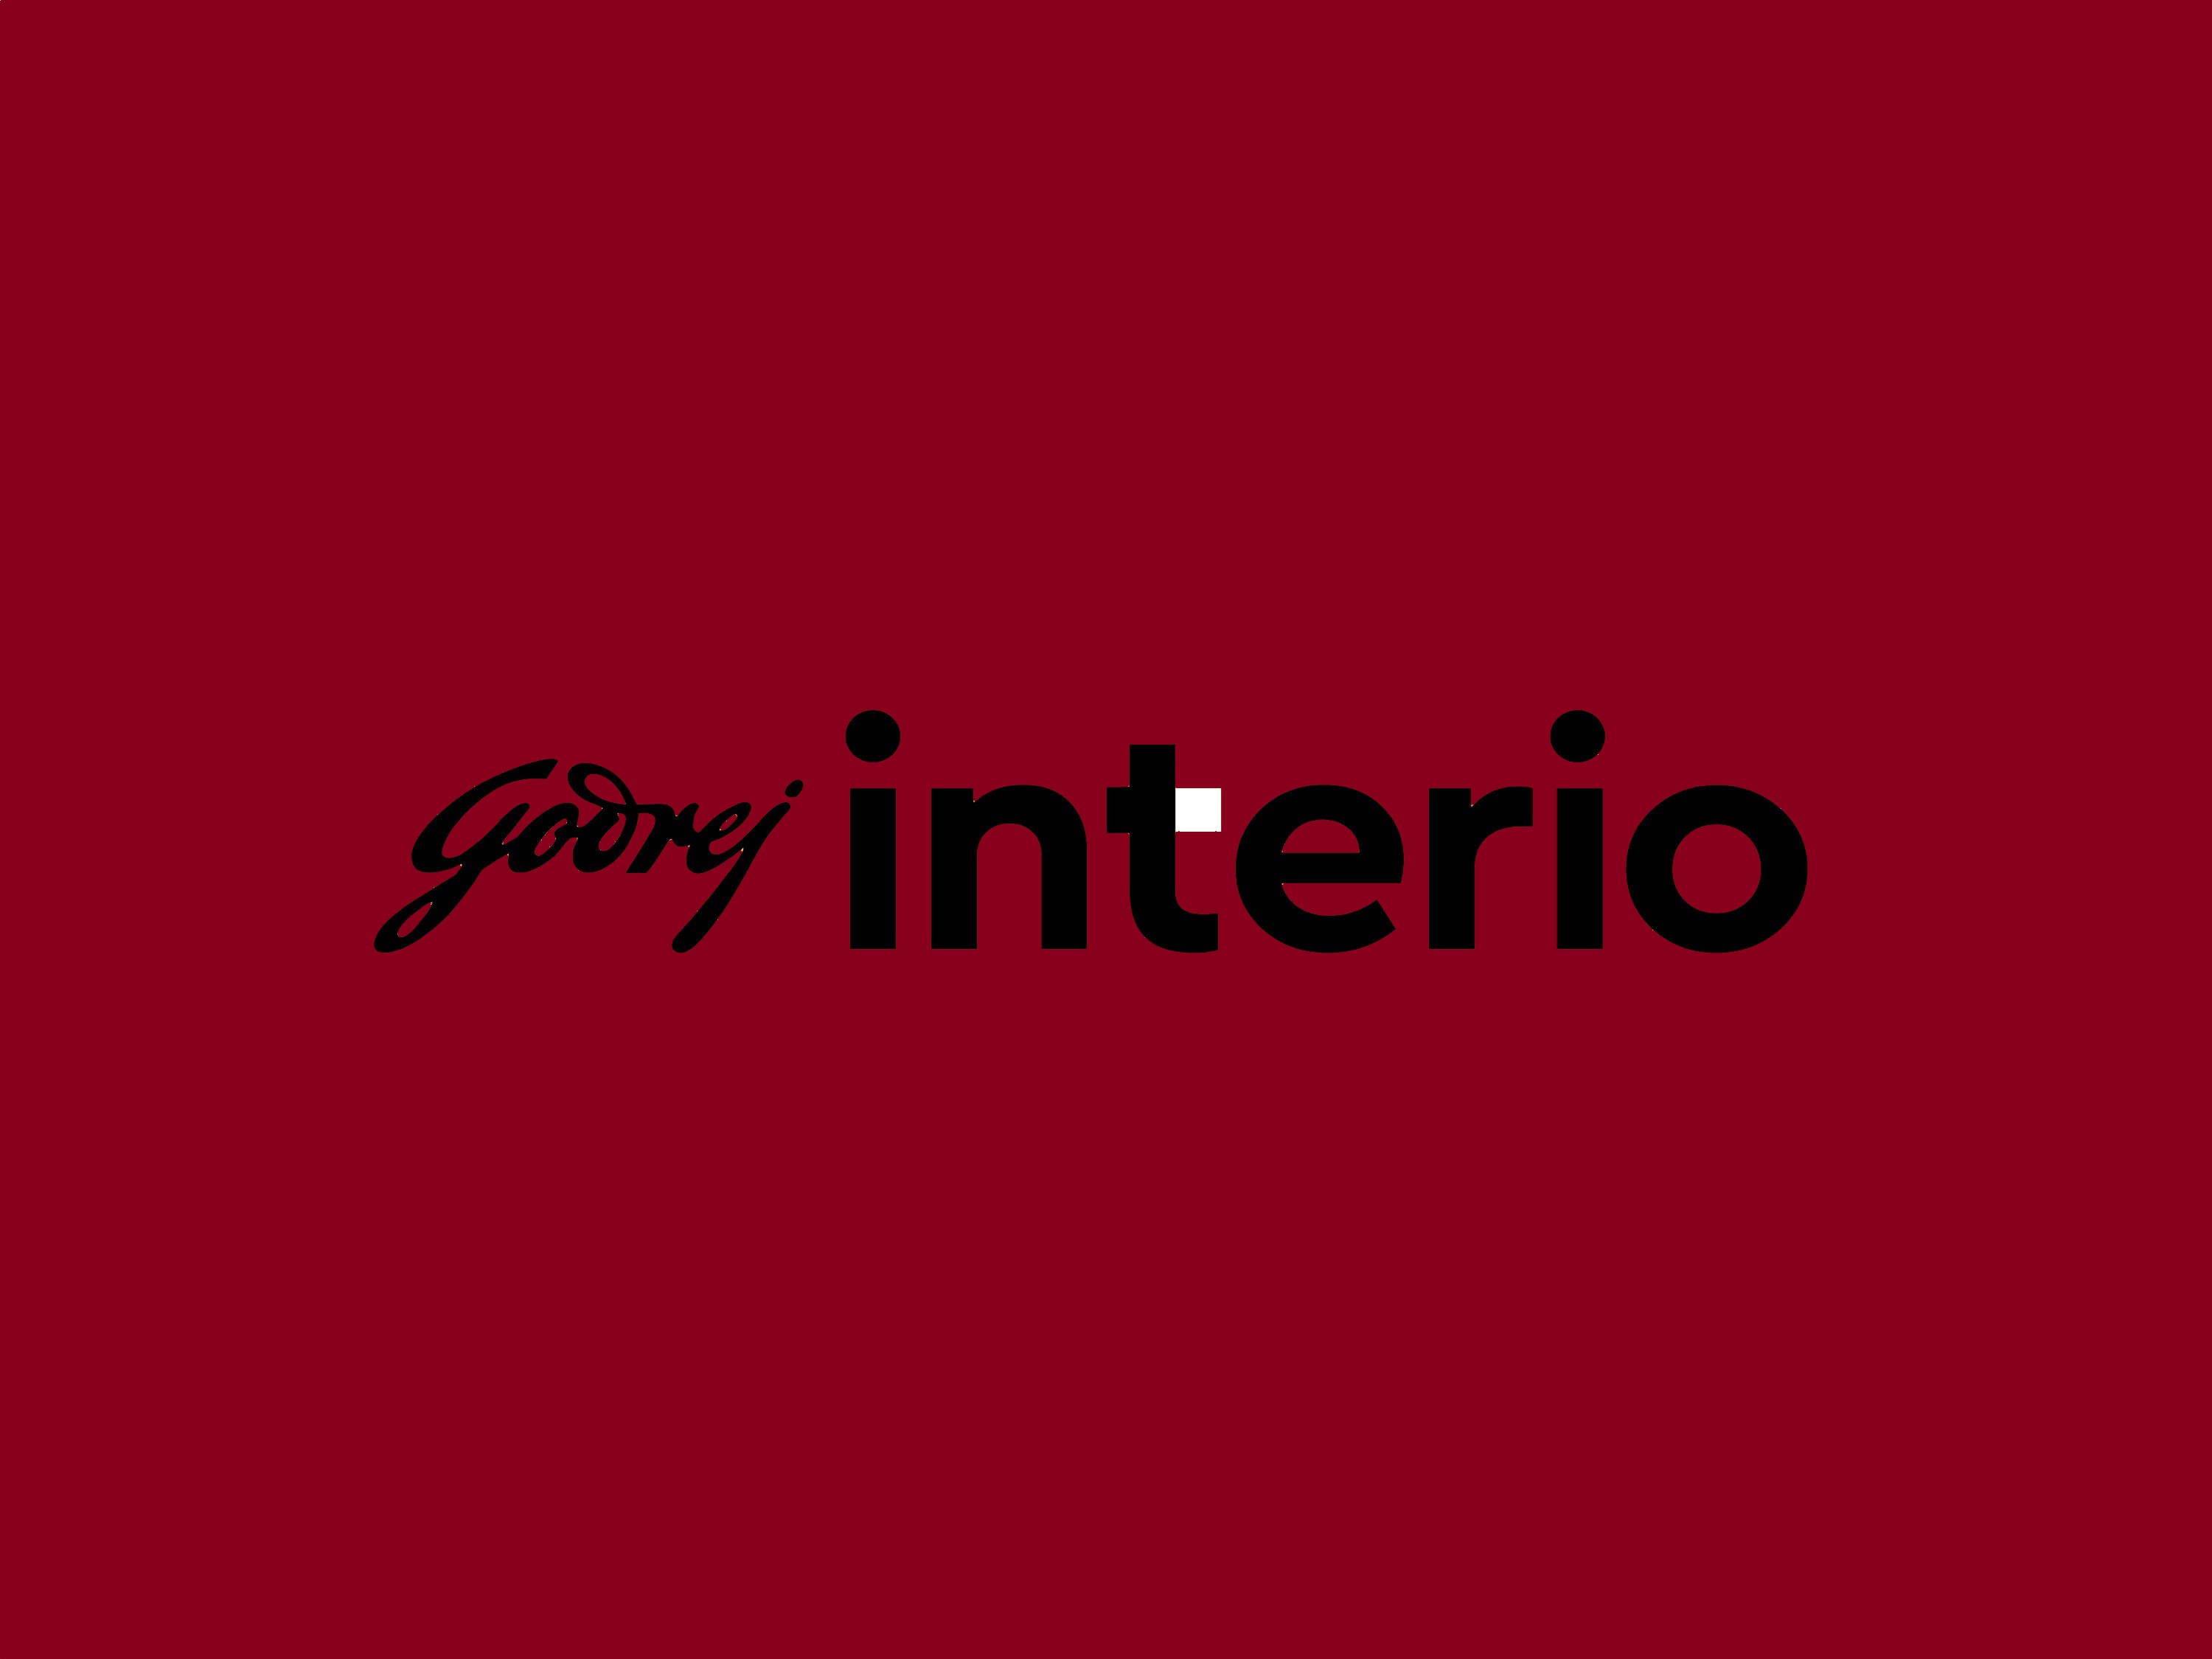 godrej interio logo png